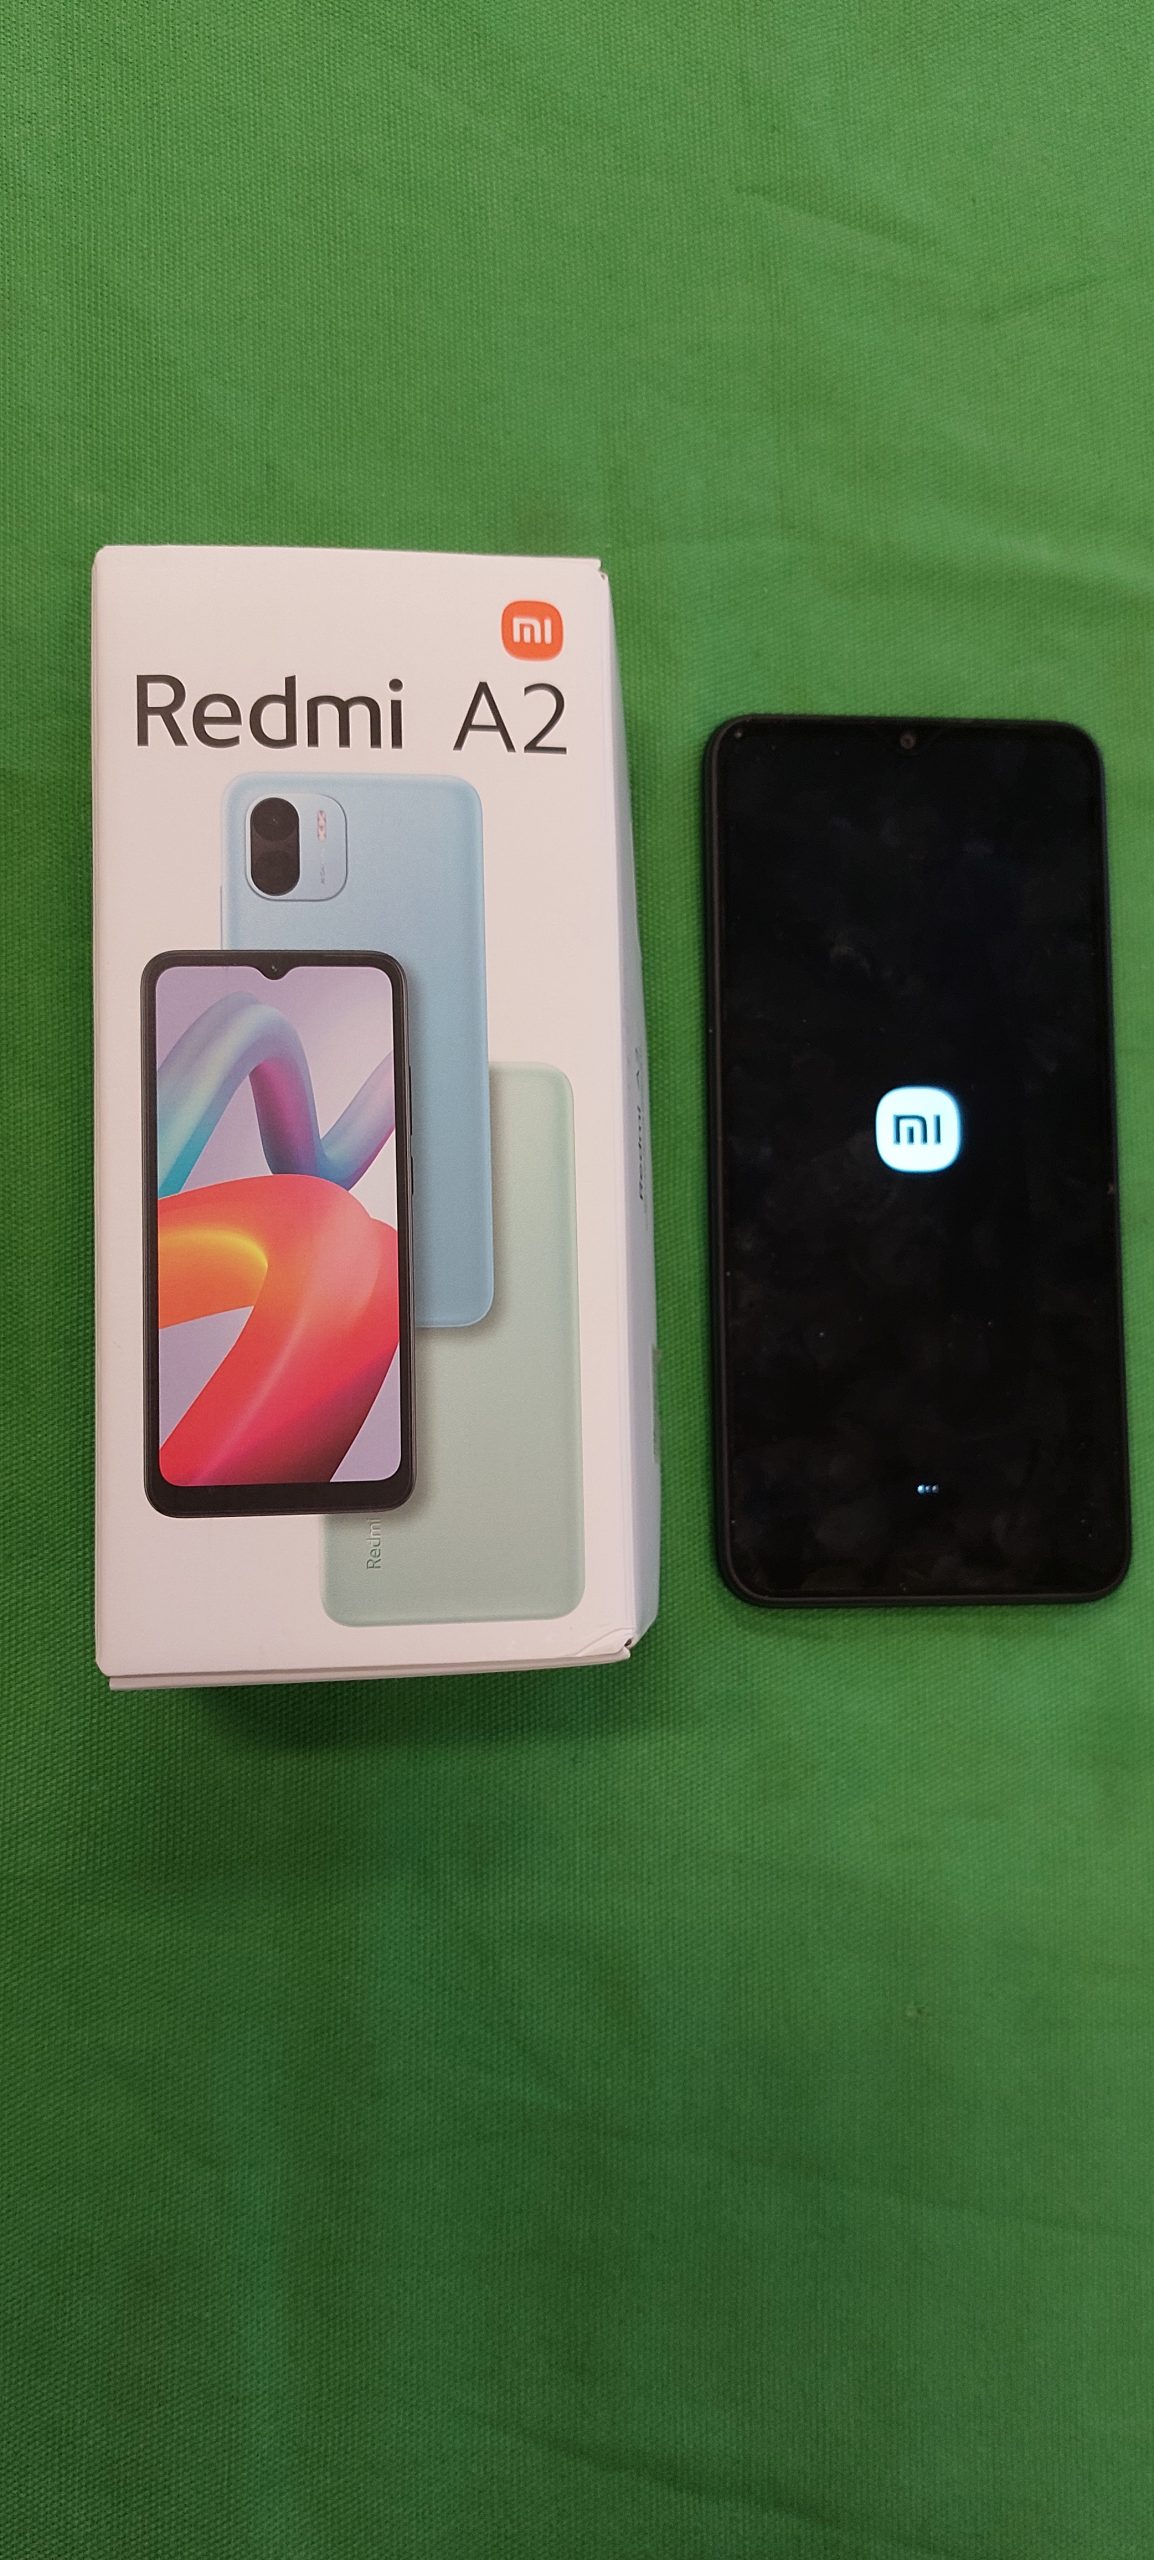 Redmi A2 független mobiltelefon, kiemelt kép